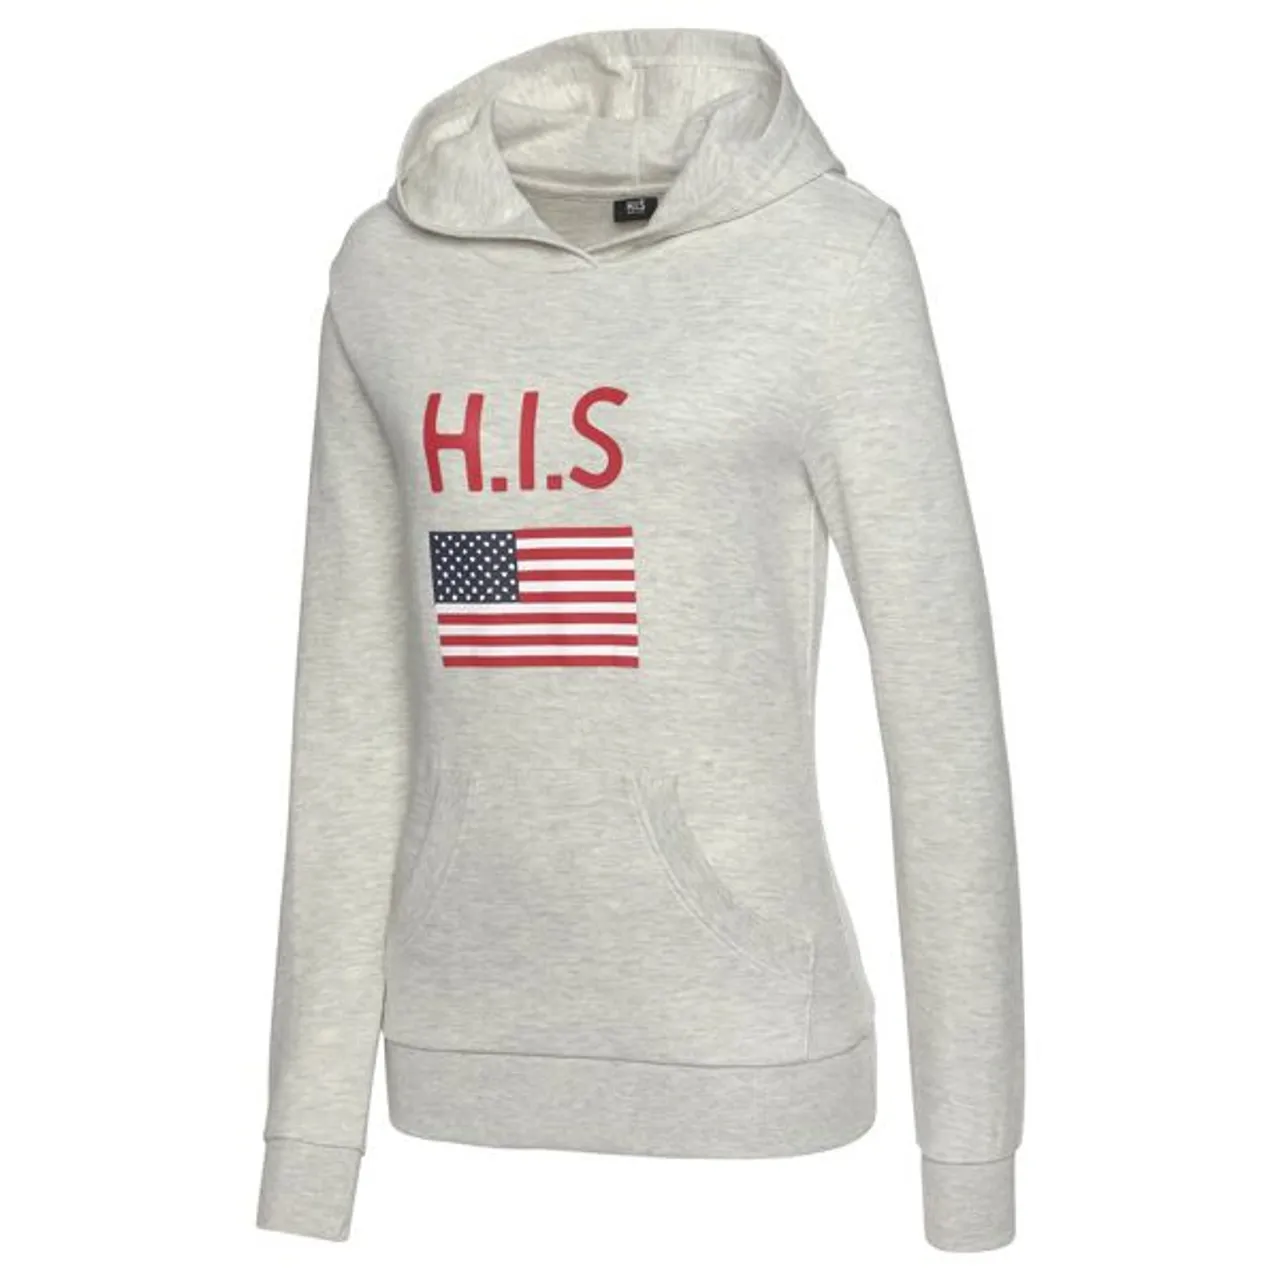 Kapuzensweatshirt H.I.S Gr. 48/50, grau (grau, meliert) Damen Sweatshirts Hoodie Kapuzenpullover Sweatshirt